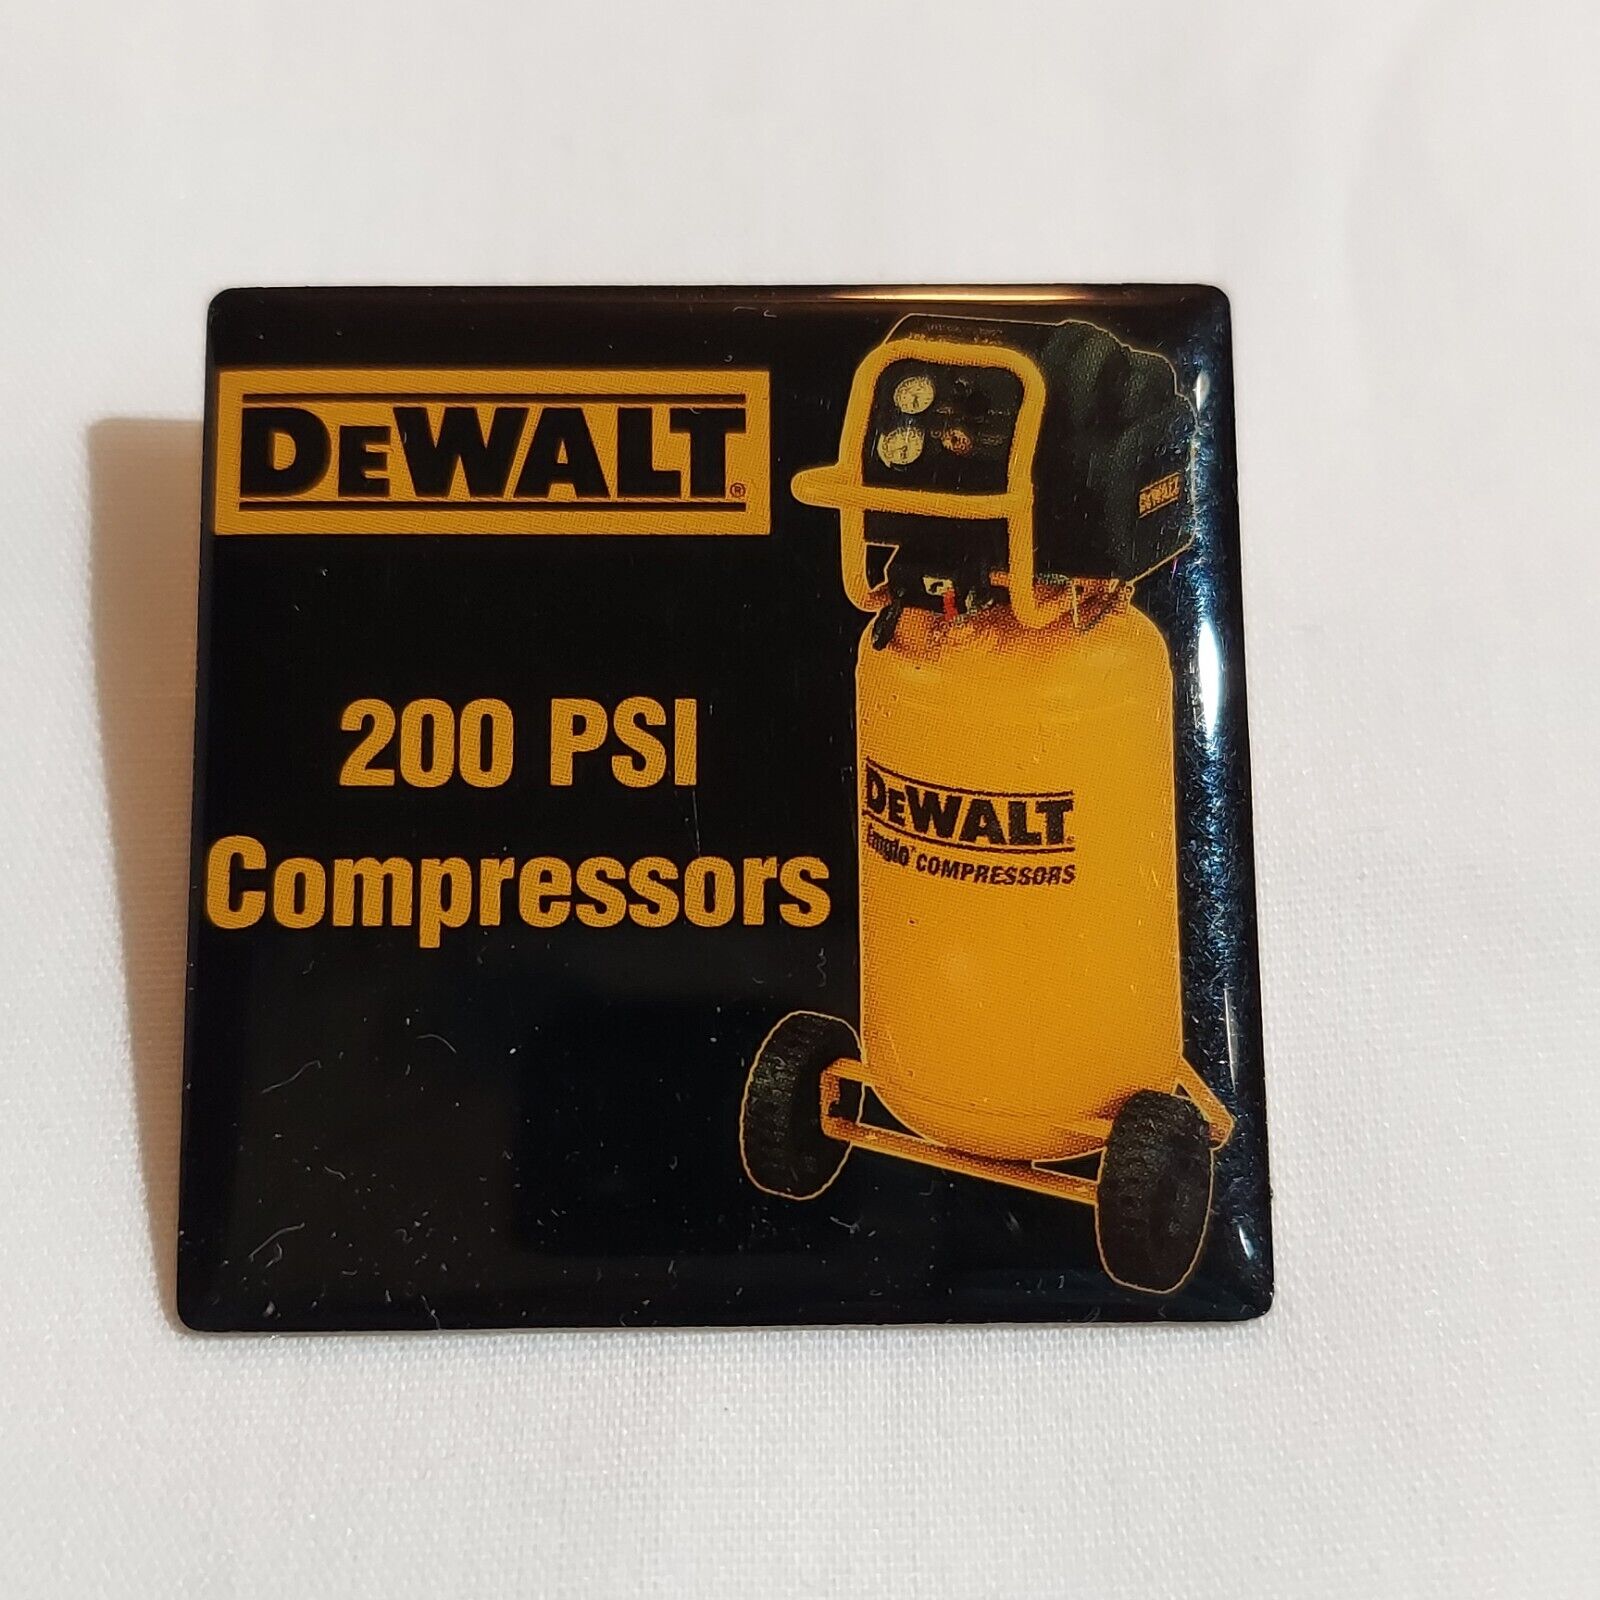 Home Depot DEWALT Power Tools 200 PSI Compressor Vendor Employee Apron Lapel Pin